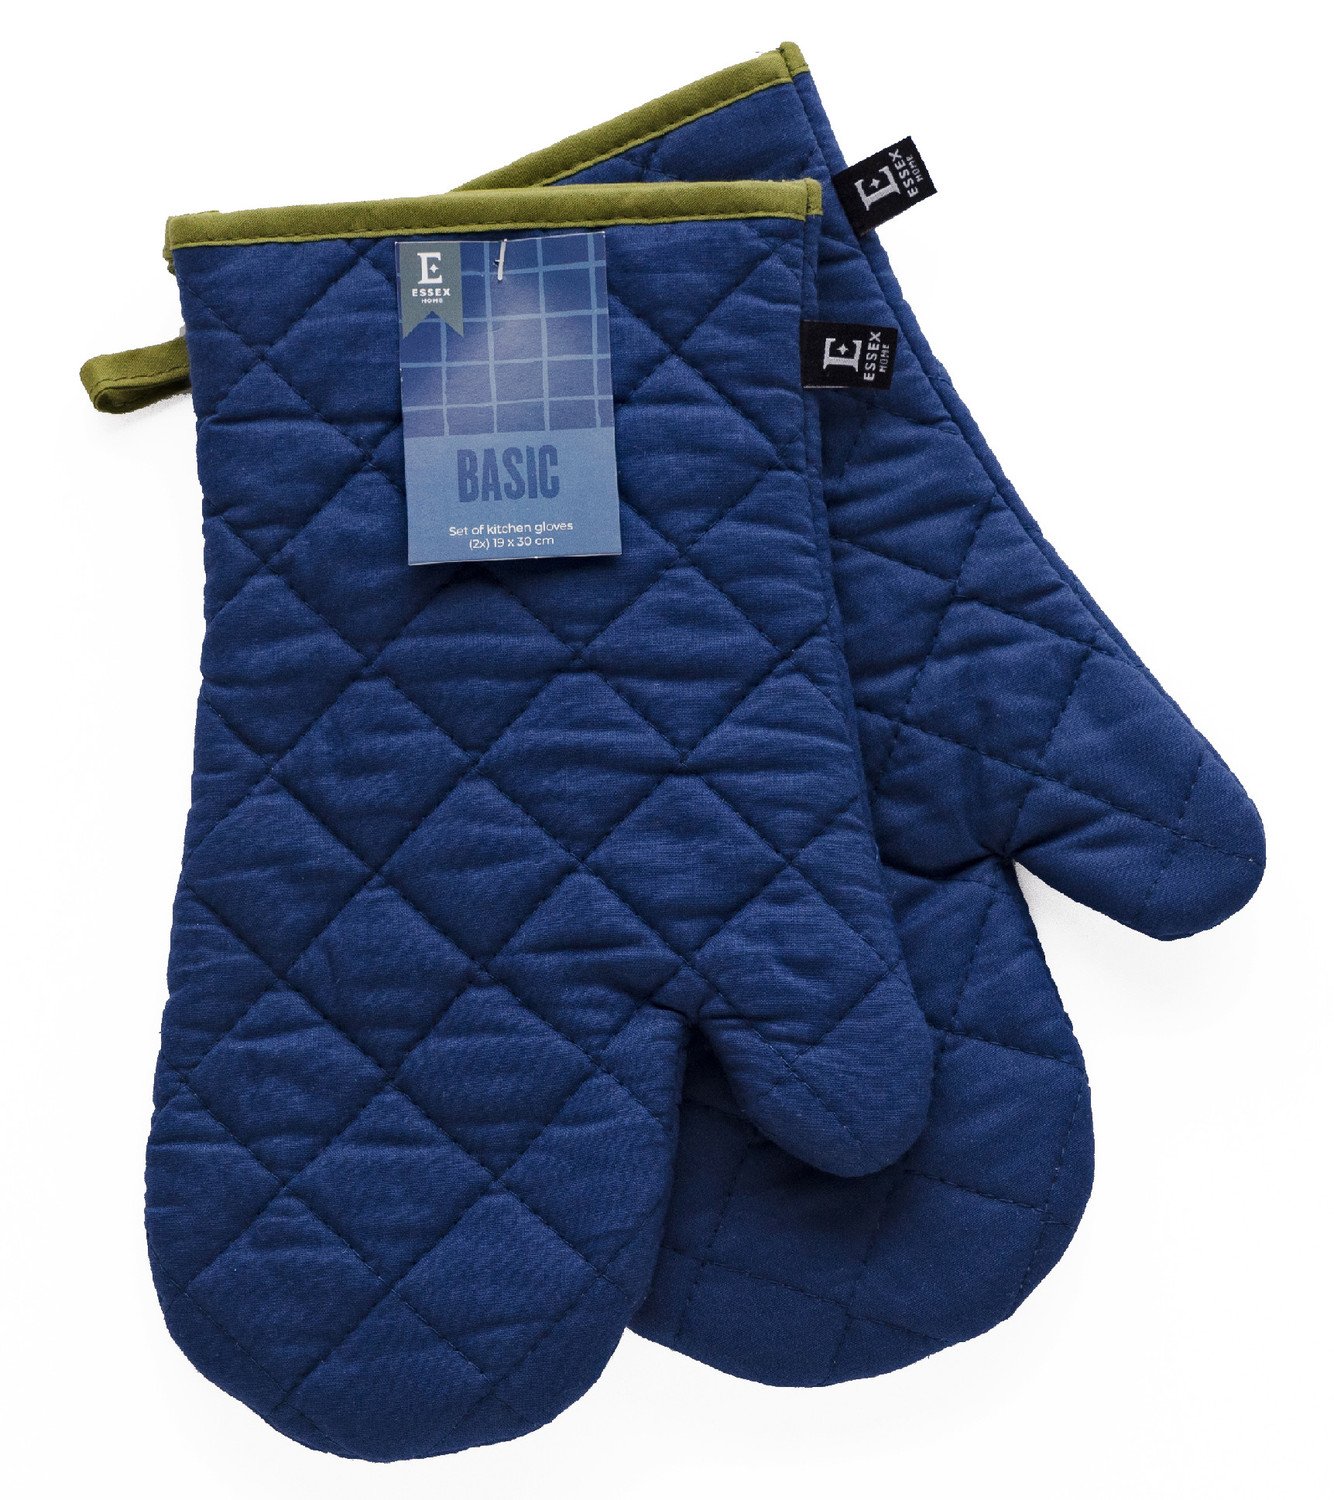 Kuchyňské bavlněné rukavice chňapky BASIC modrá, 100% bavlna 18x30 cm Essex Balení 2 kusy - levá a pravá rukavice.